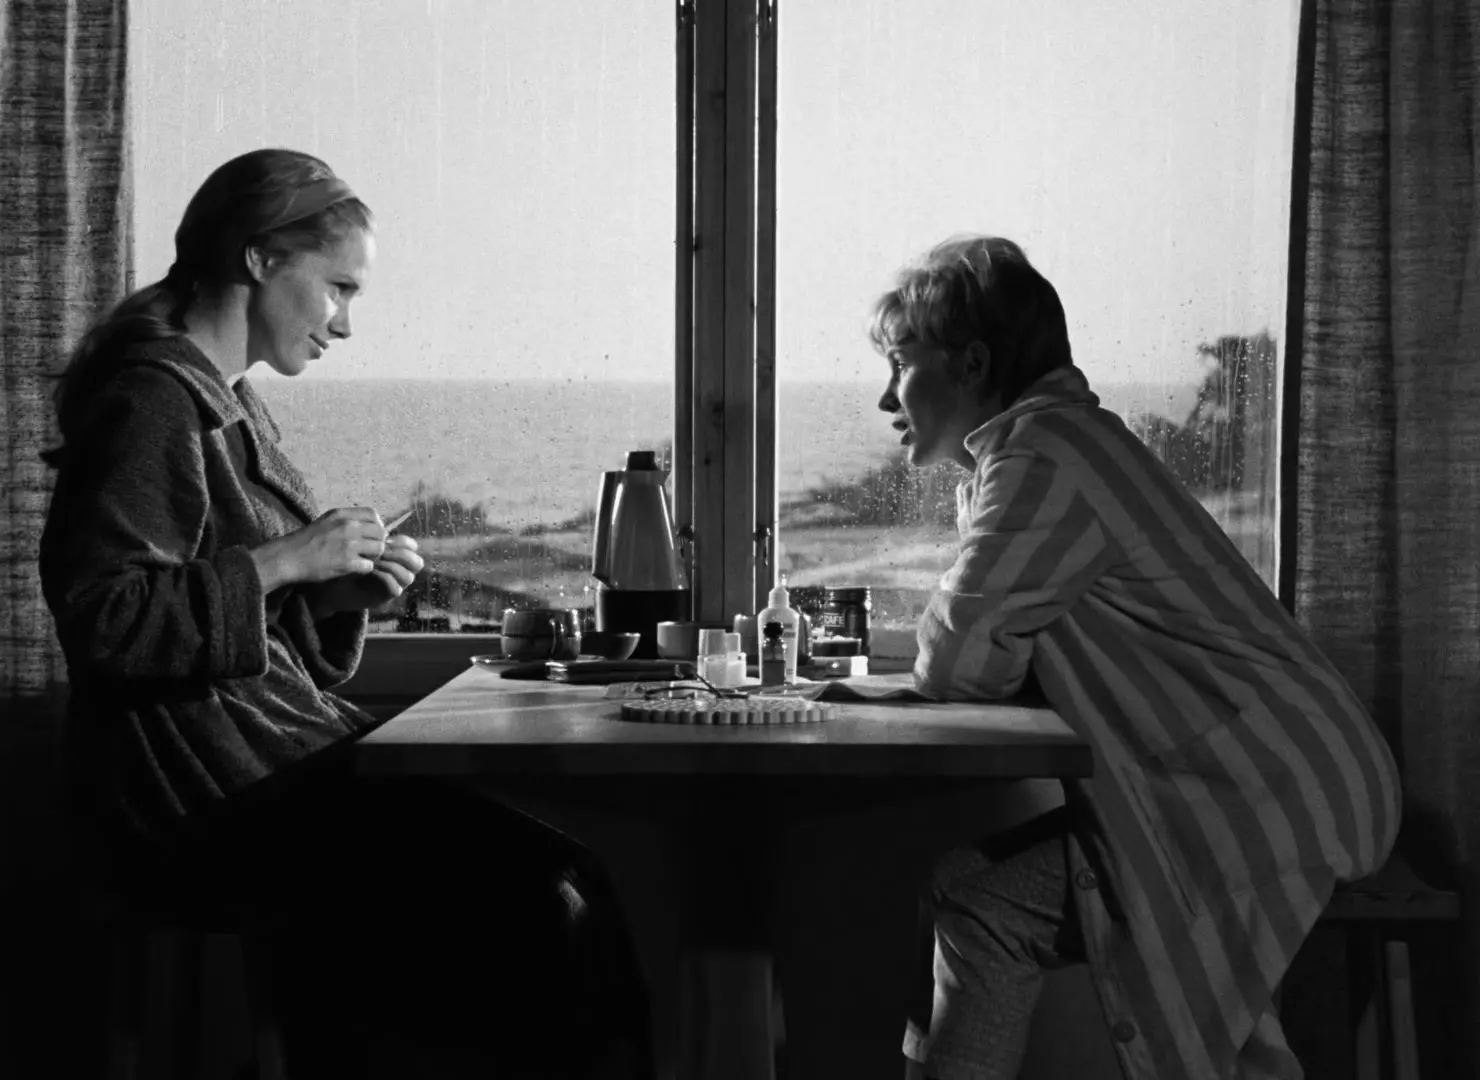 |Especial| 'Persona' (1966) - Dir. Ingmar Bergman